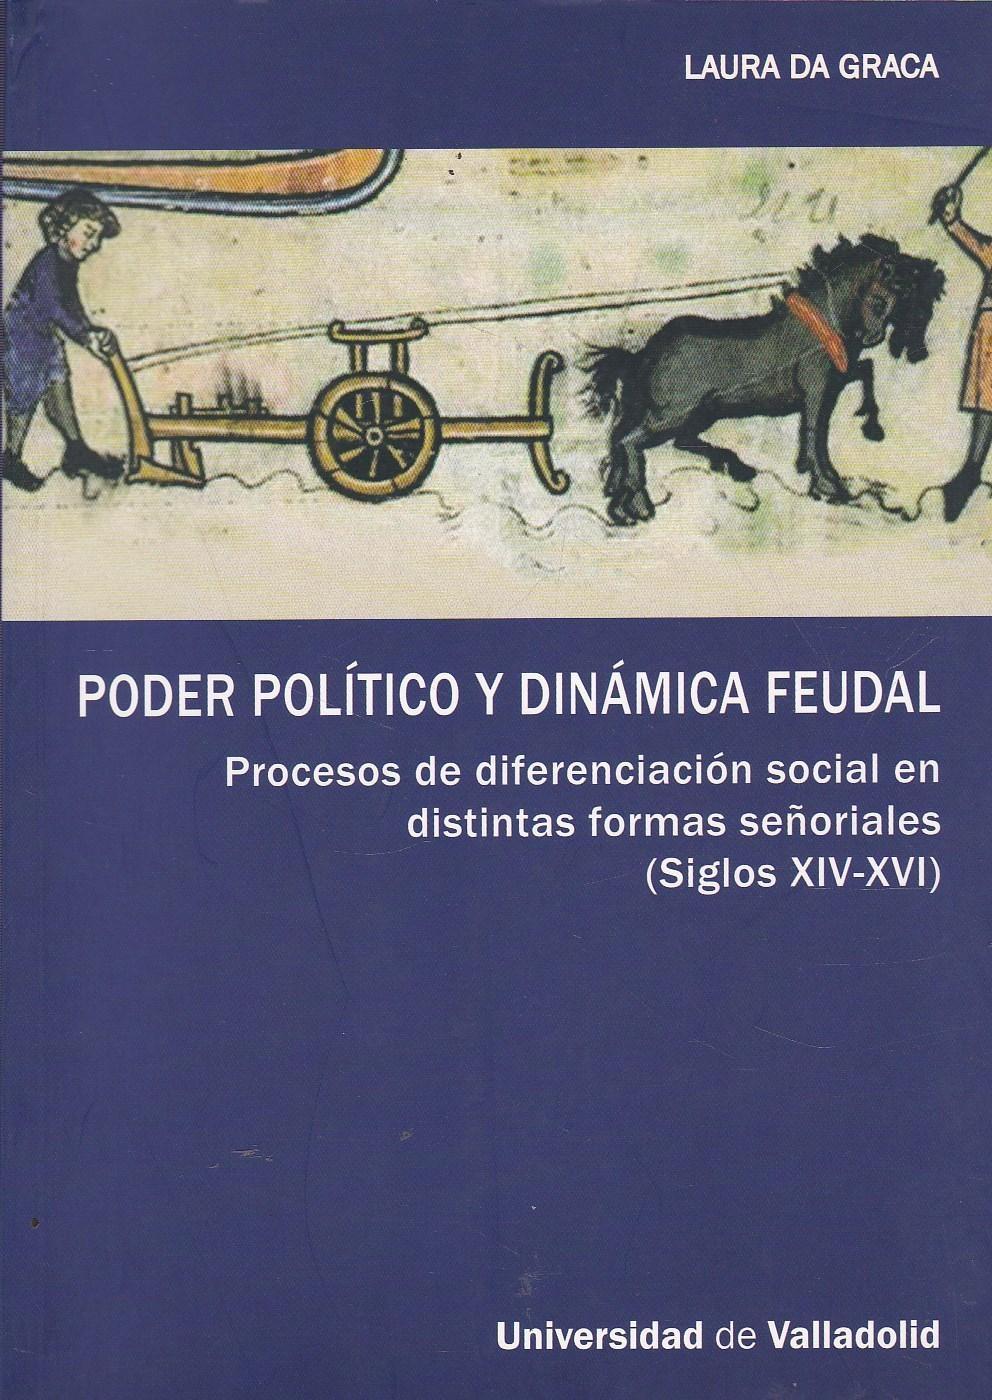 Poder político y dinámica feudal. Procesos de diferenciación social en distintas formas señoriales "Siglos XIV-XVI". 